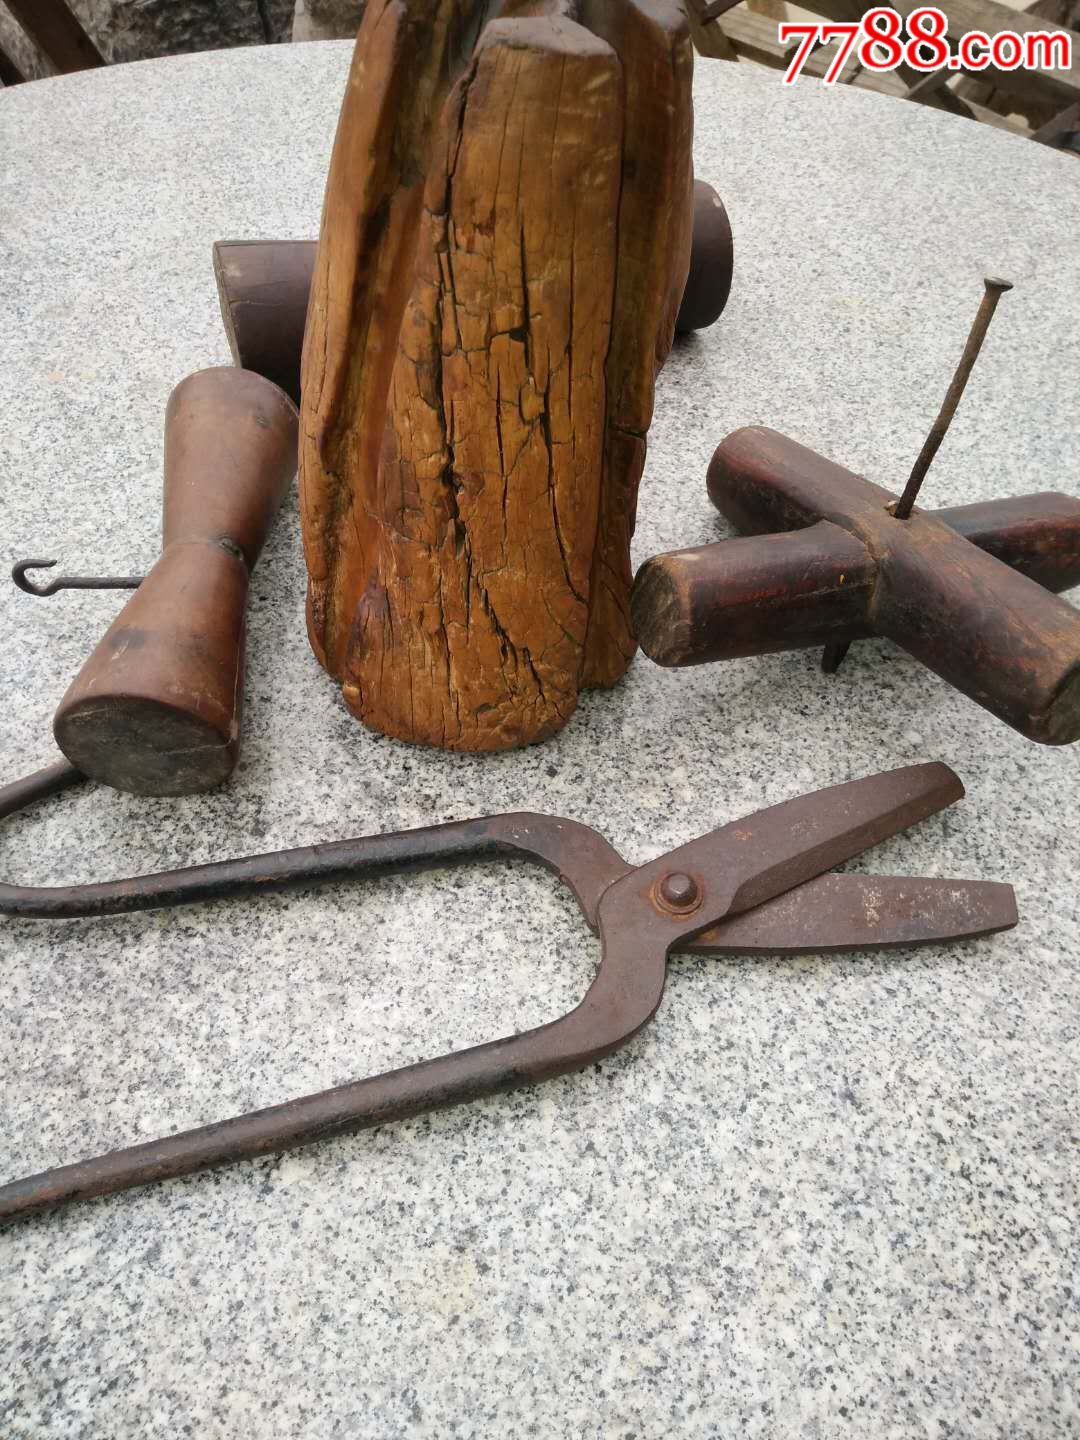 民俗物件之打绳子工具一套品相完整包浆混厚难得一见喜欢私聊枣木楠木